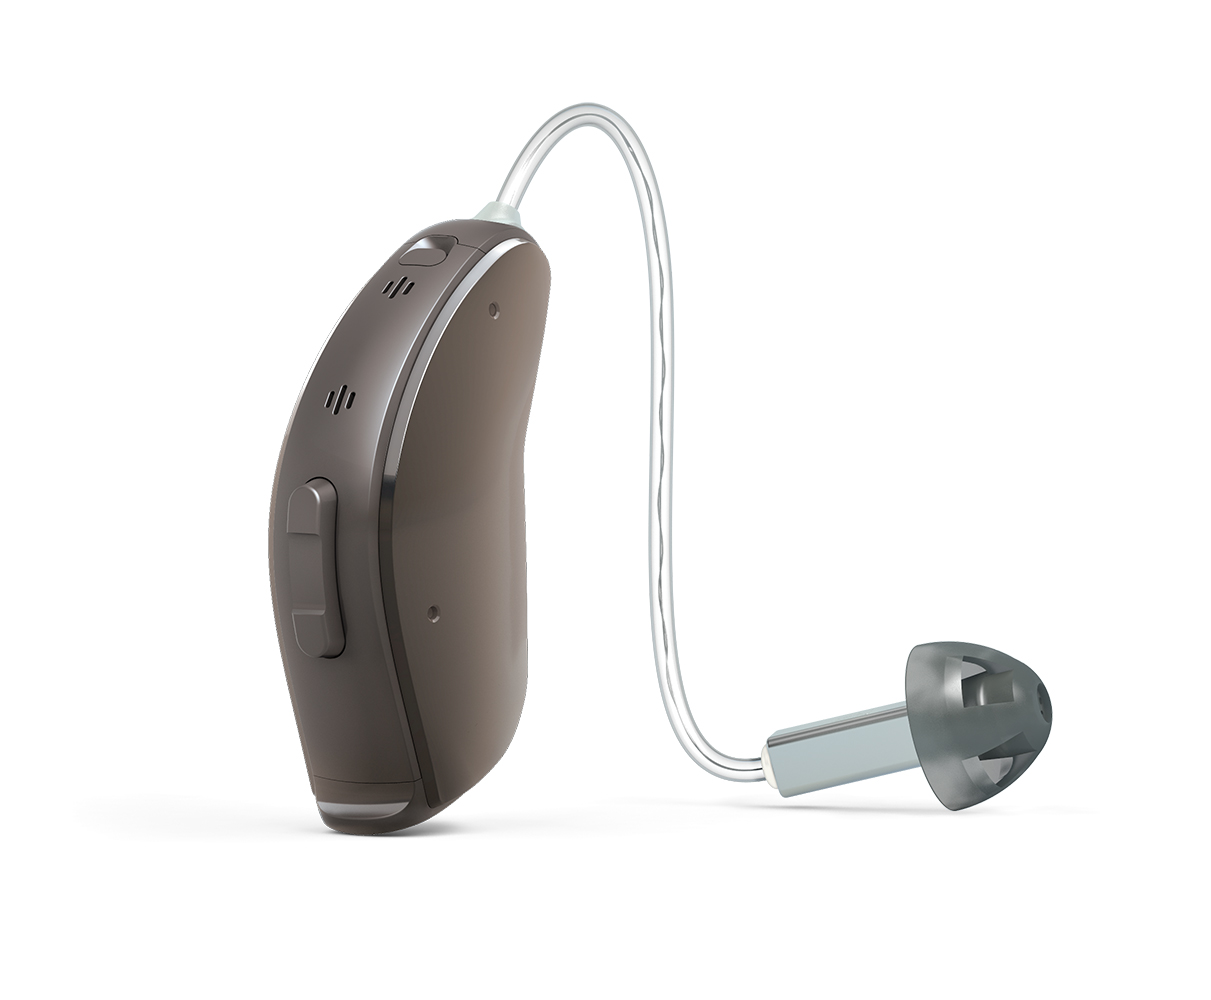 耳あな式補聴器 耳あかフィルター  ナノケアワックスガード WIDEX RICタイプ耳かけ式補聴器  日本全国 送料無料 ワイデックス